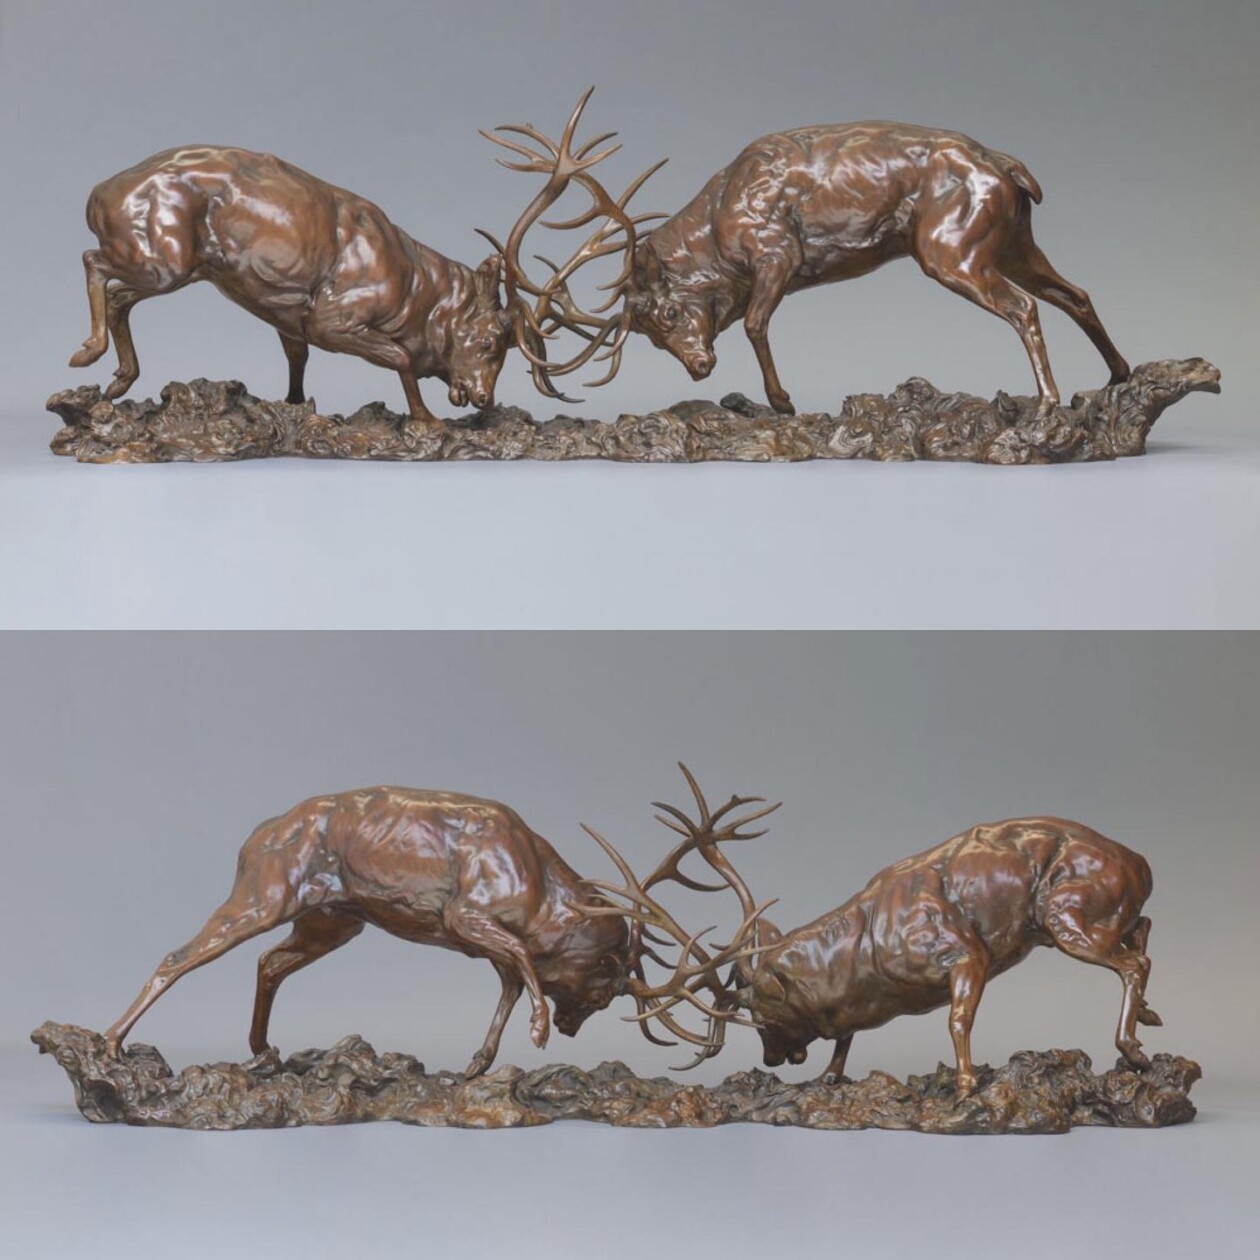 Exquisite Wildlife Bronze Sculptures By Nick Bibby (15)